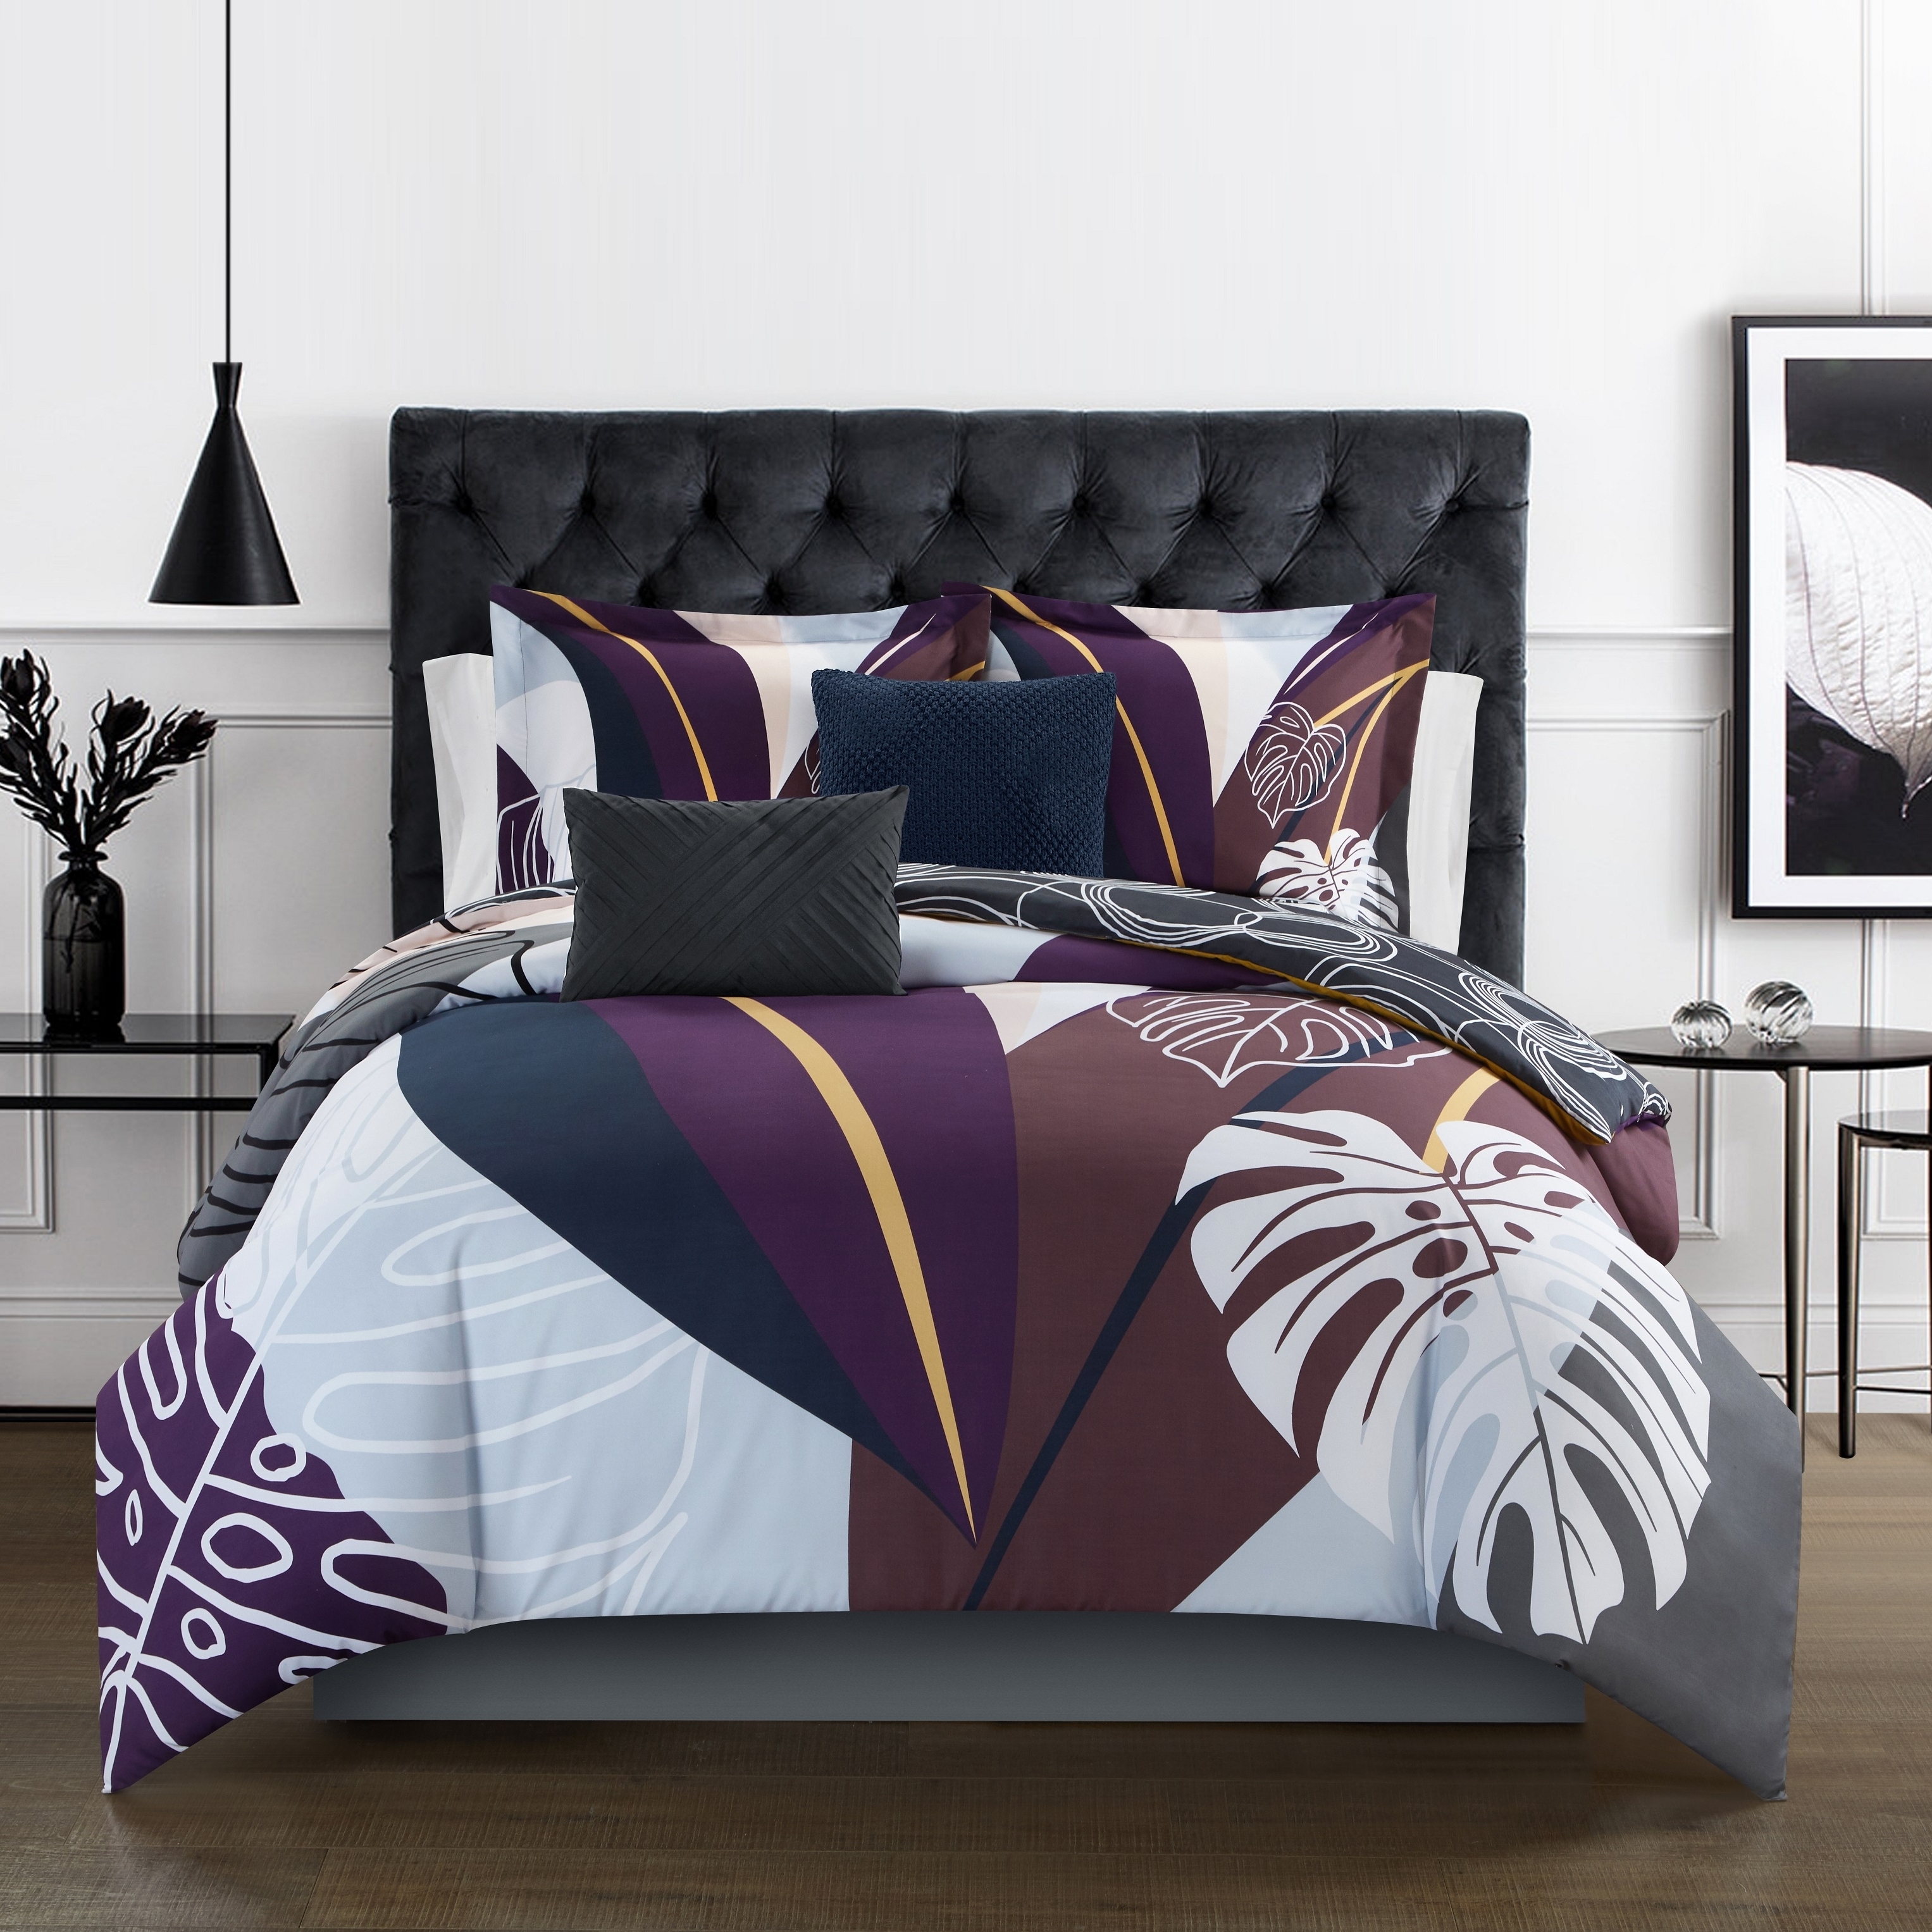 Emeraude 3 Piece Reversible Quilt Set Floral Print Cursive Script Design Bedding - Black, King